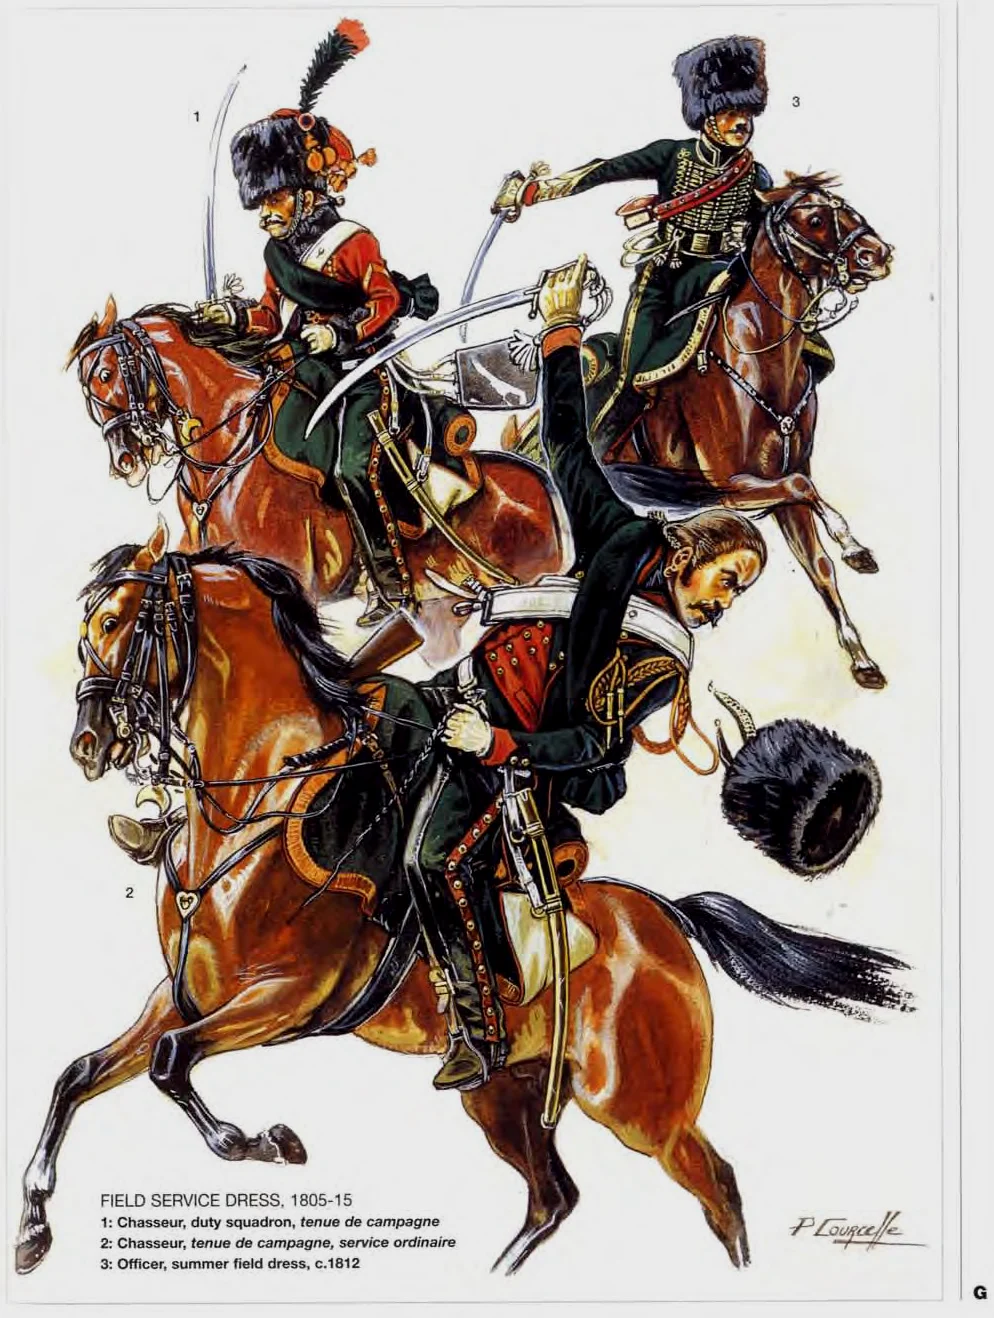 拿破仑的猎骑兵，其职能和骠骑兵类似，但是他们的风格和服装都没有那么张扬